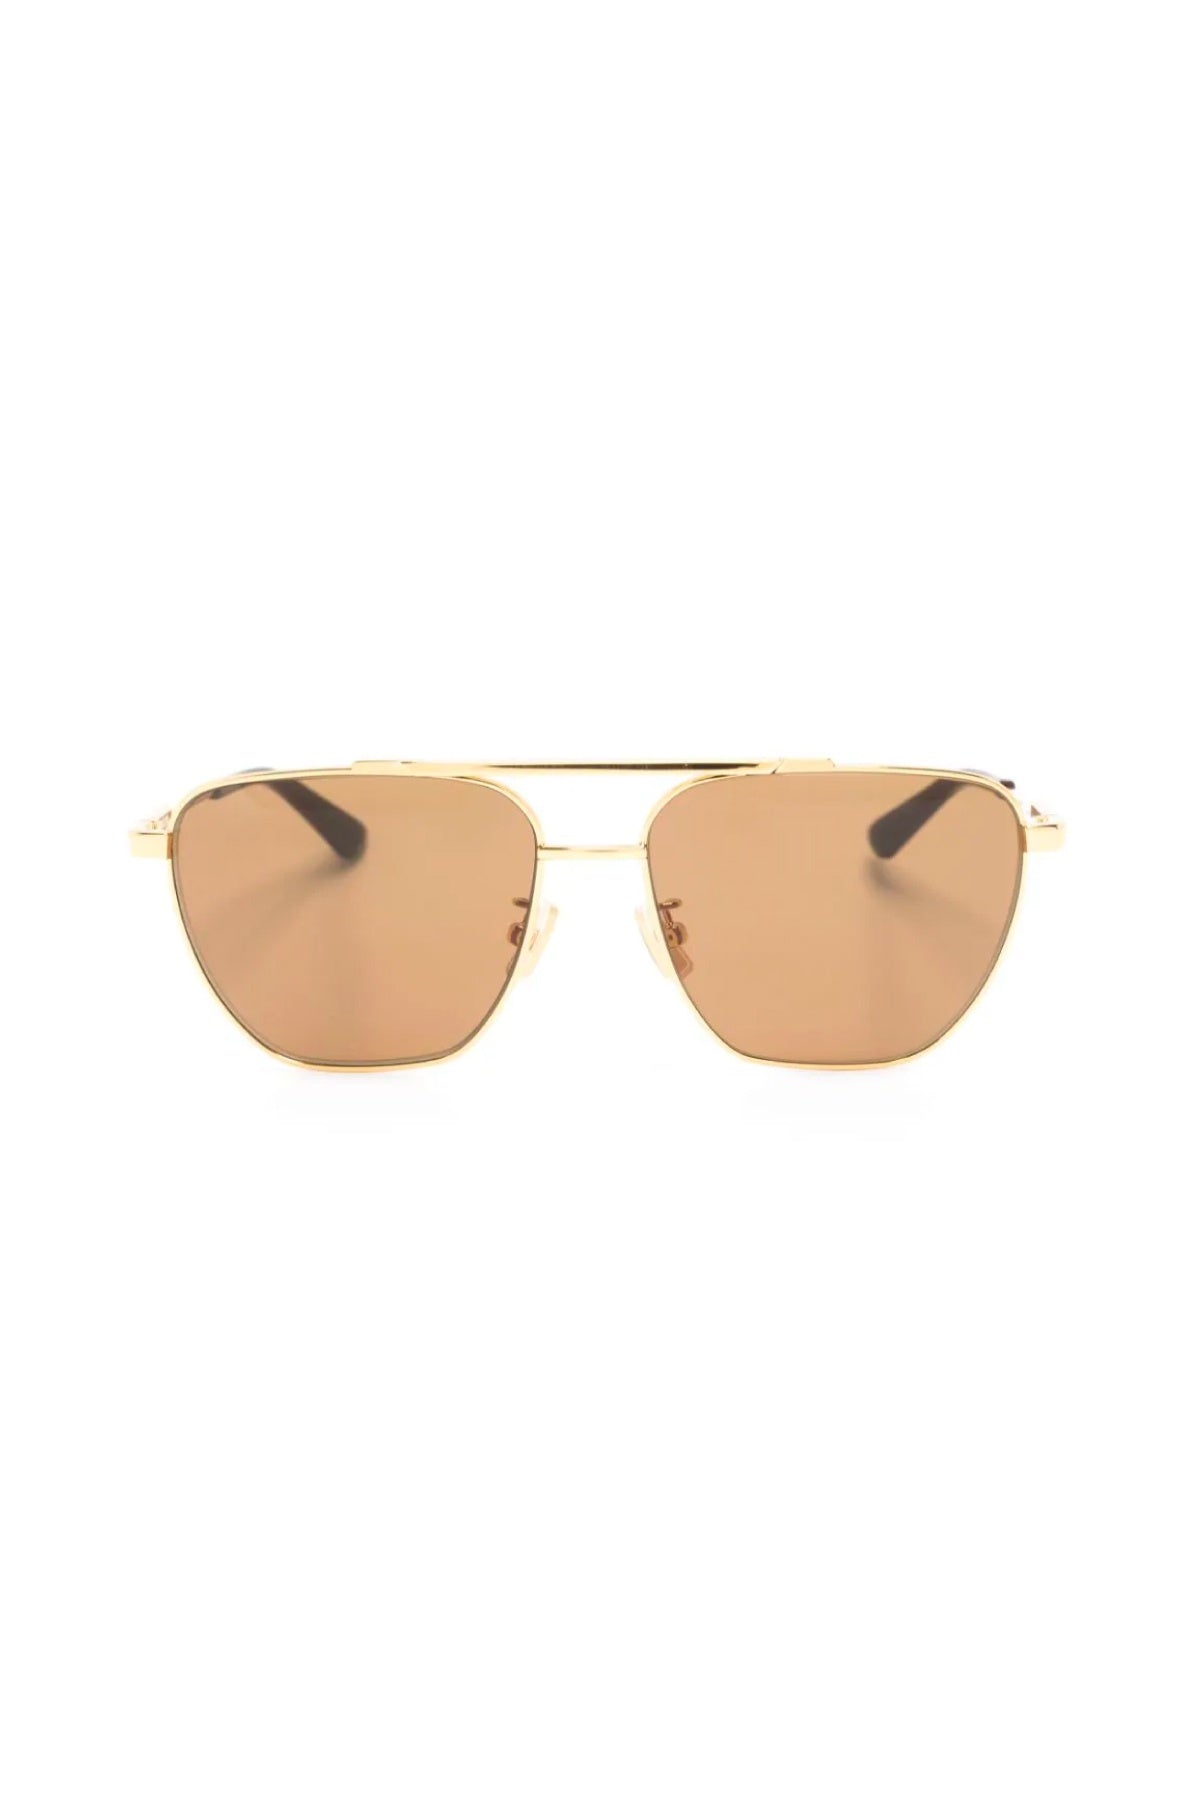 Bottega Veneta Classic Aviator Sunglasses - Gold